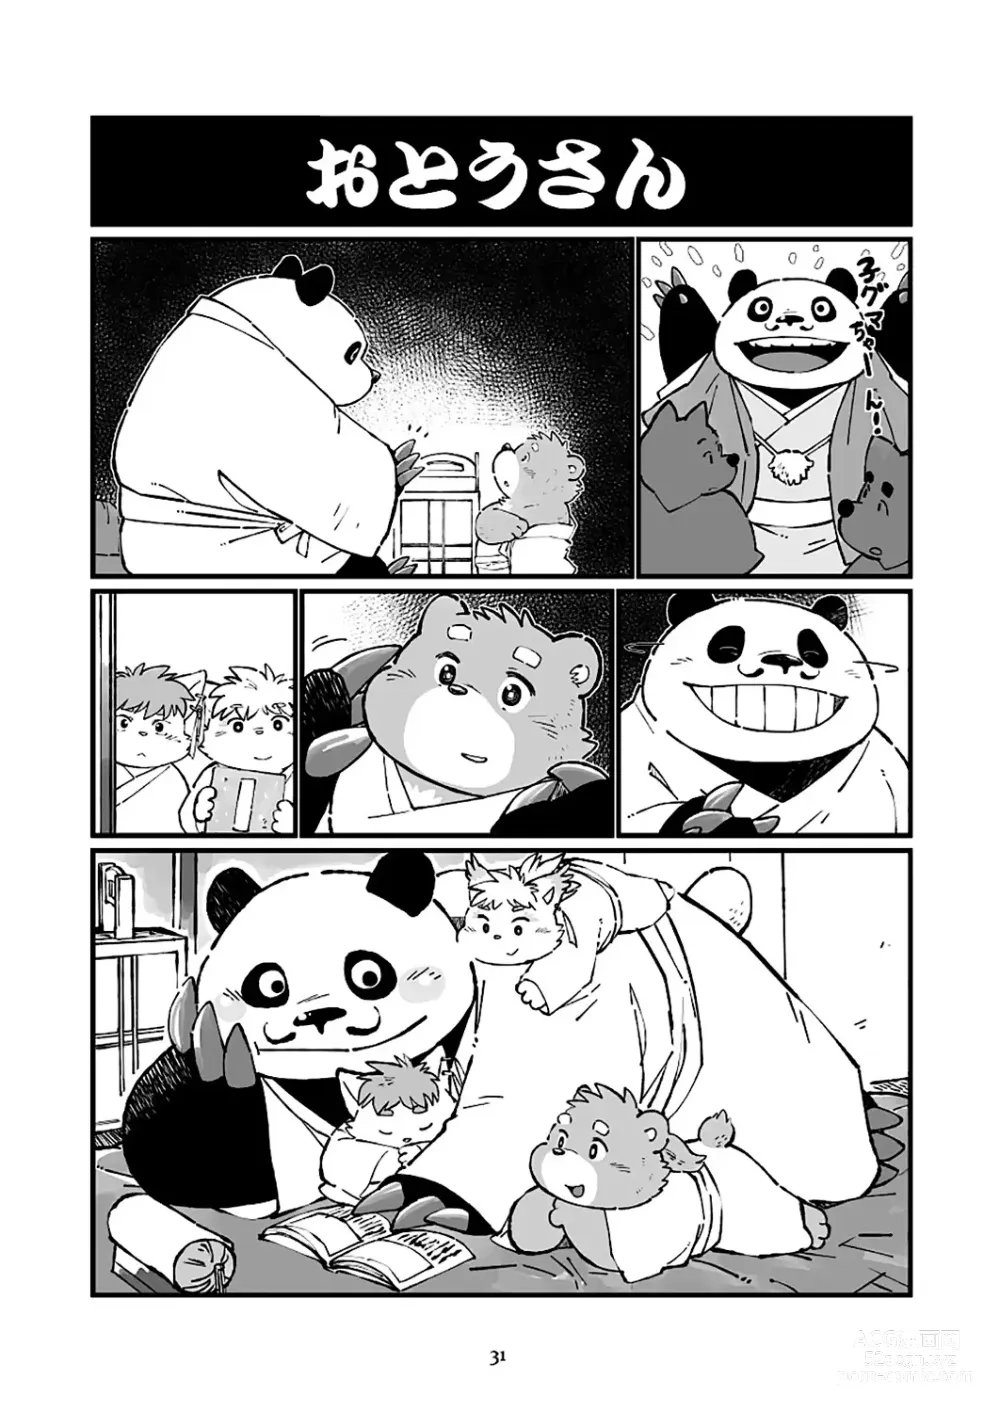 Page 31 of doujinshi 狗津原细见